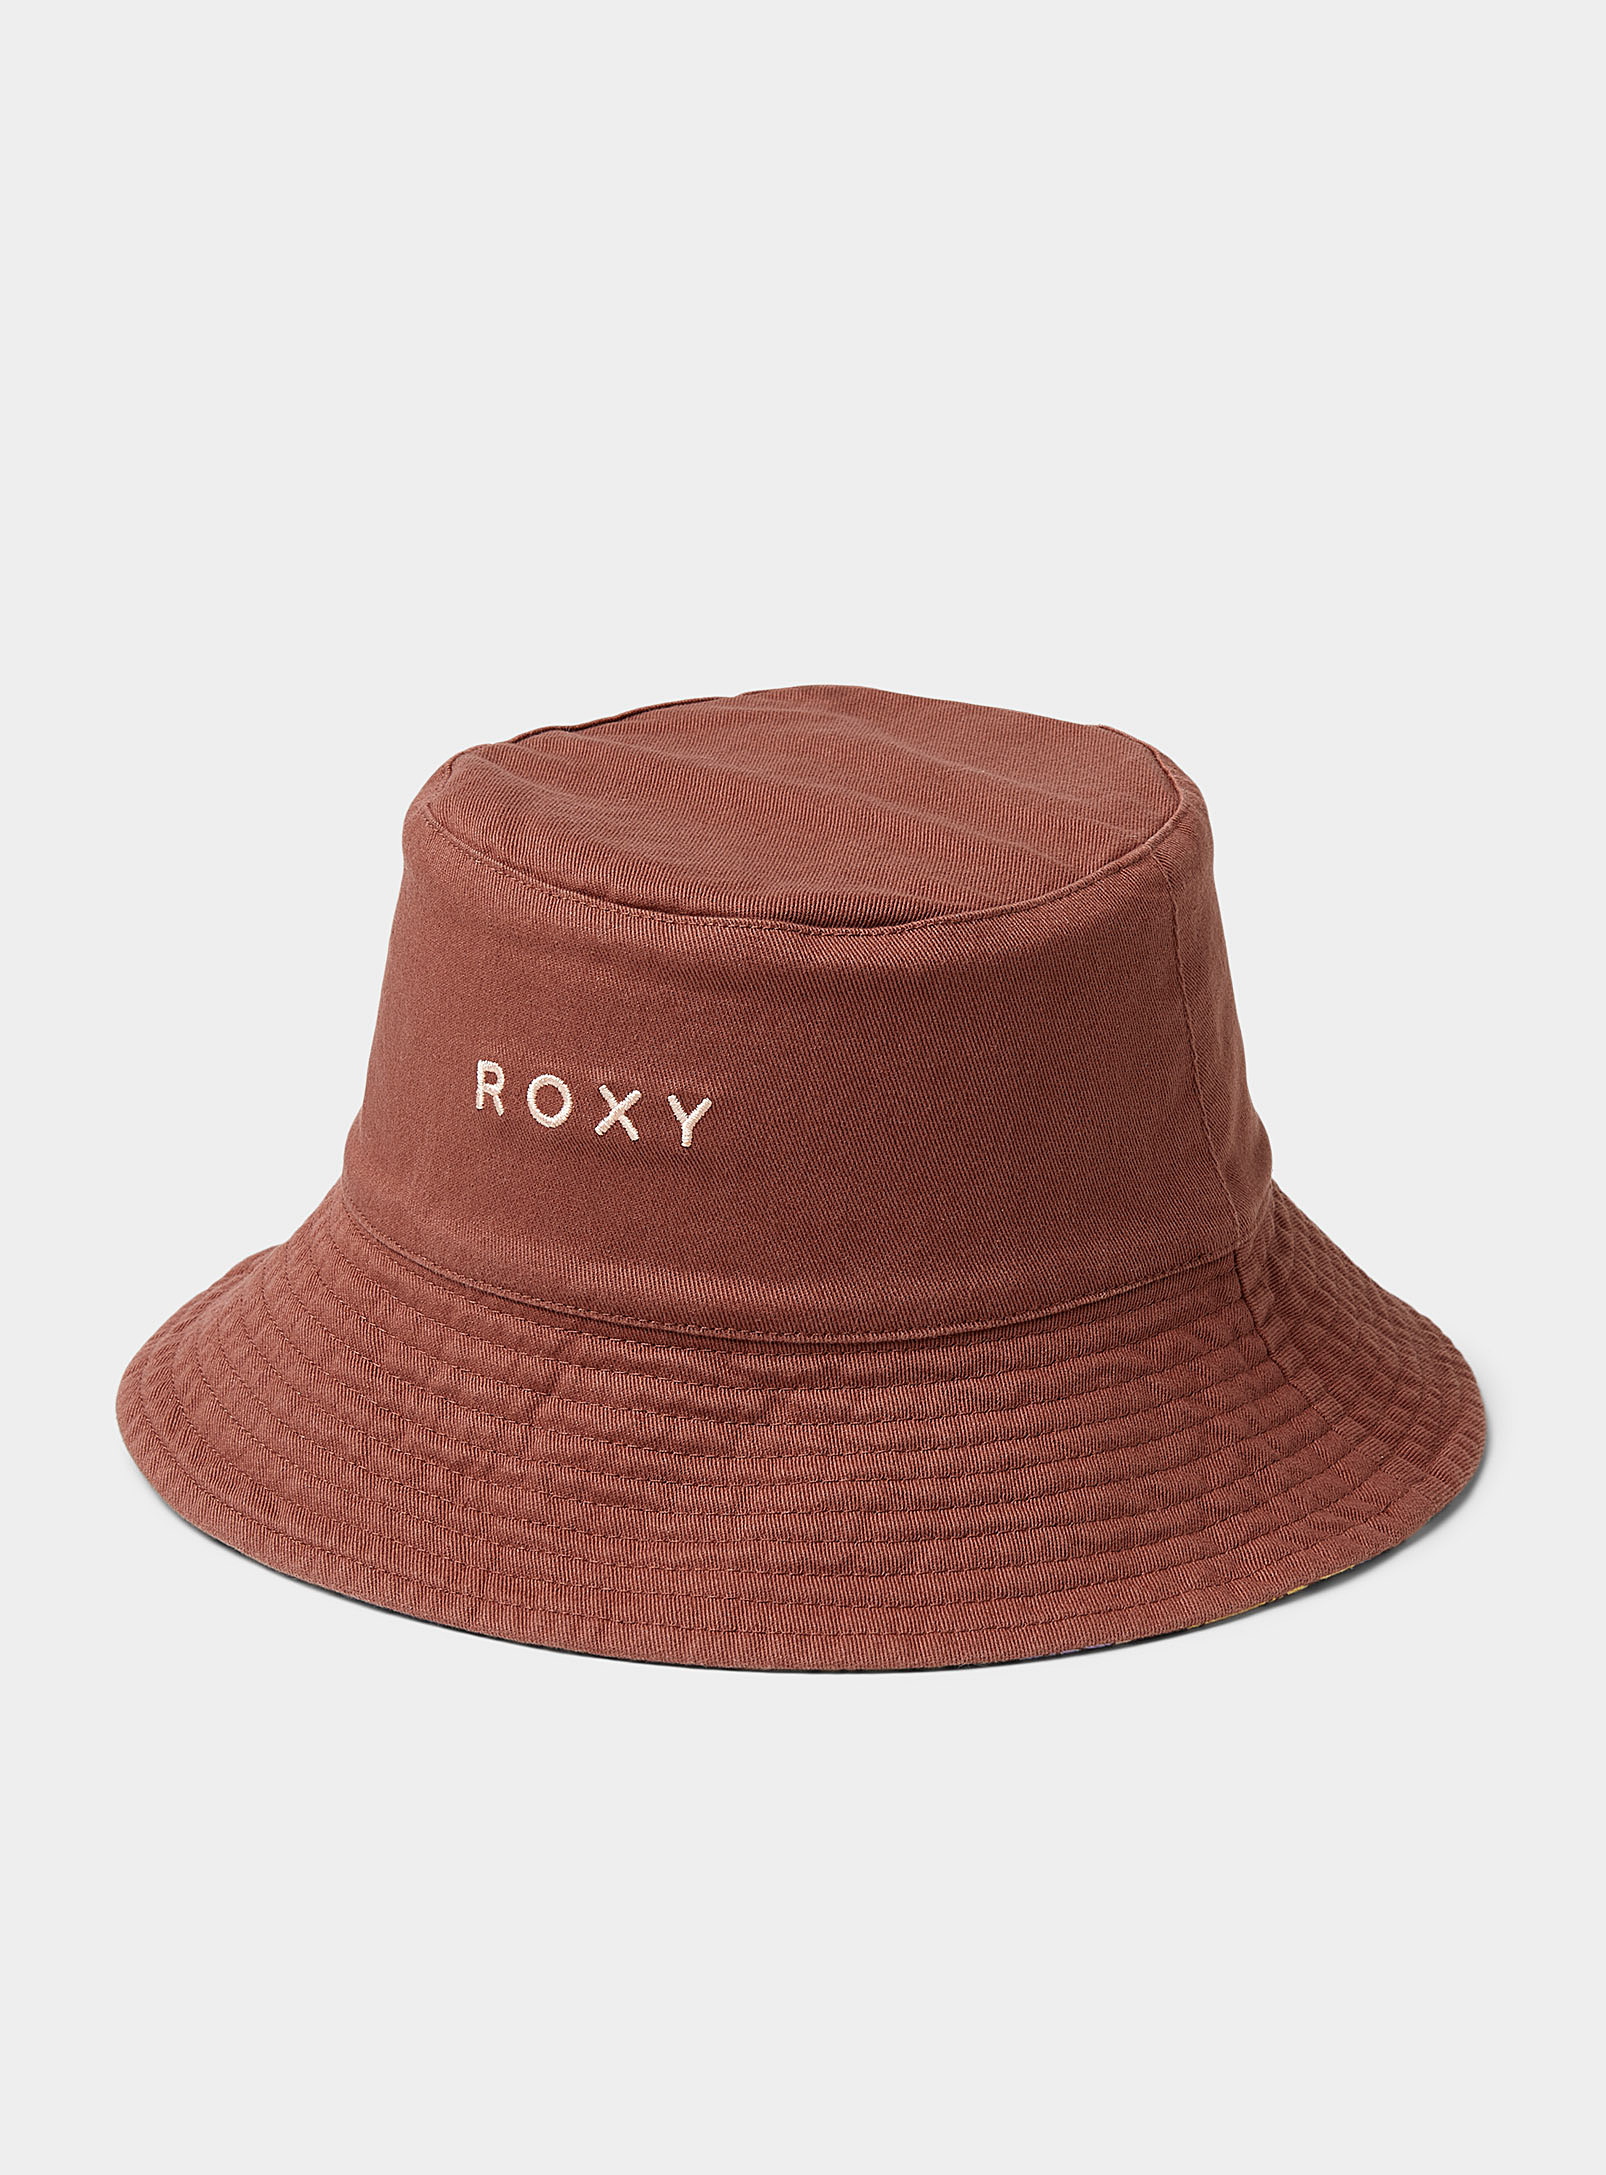 Roxy - Women's Summer flower reversible bucket hat